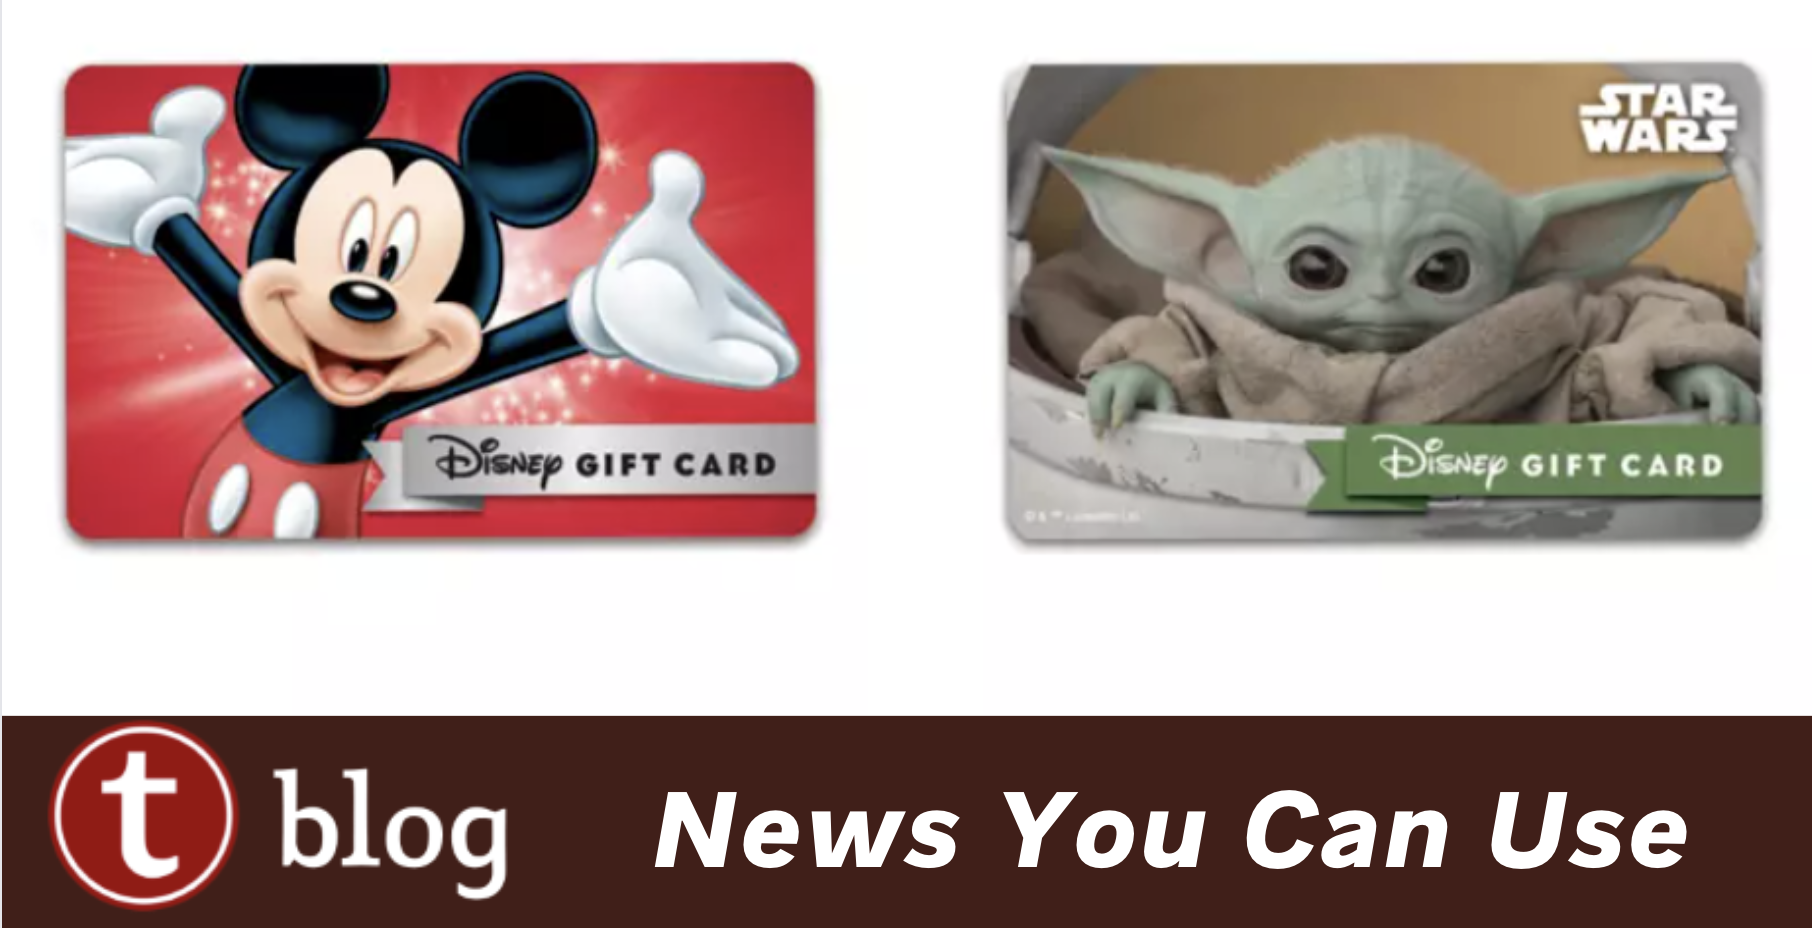 Best Disney Gifts for Women - Disney Insider Tips